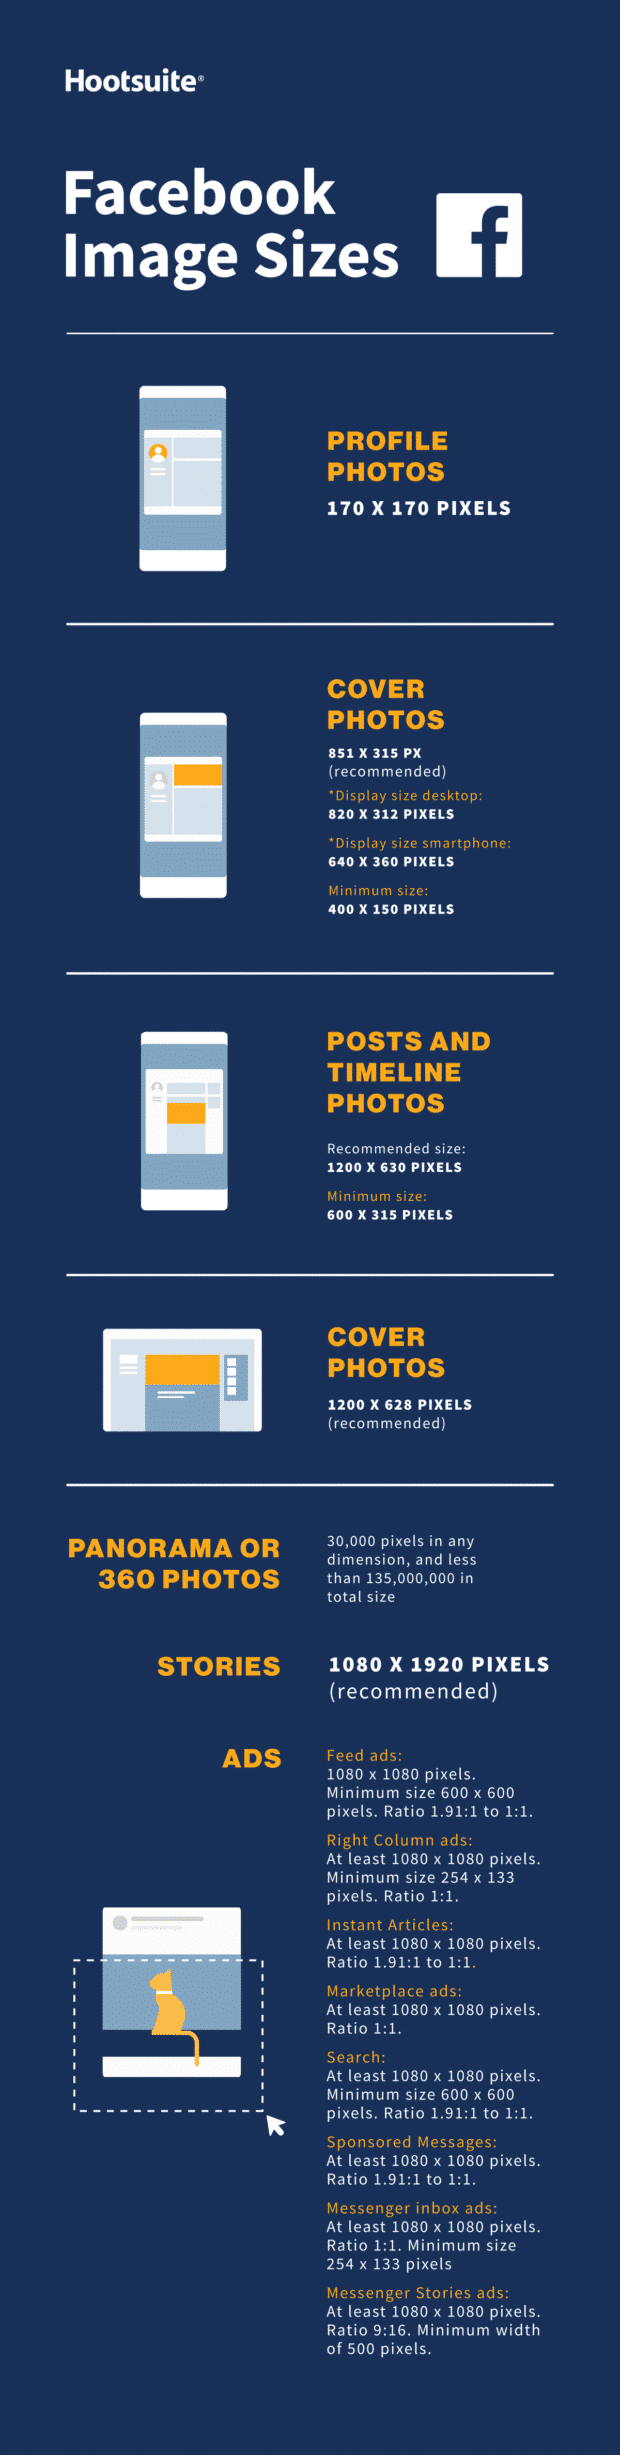 Kích thước ảnh bìa Facebook: Bạn muốn tạo một ảnh bìa Facebook đẹp mắt và chuyên nghiệp để thu hút khách hàng hoặc bạn bè? Hãy xem ảnh để biết kích thước ảnh bìa Facebook chính xác và sáng tạo bố cục ảnh bìa.